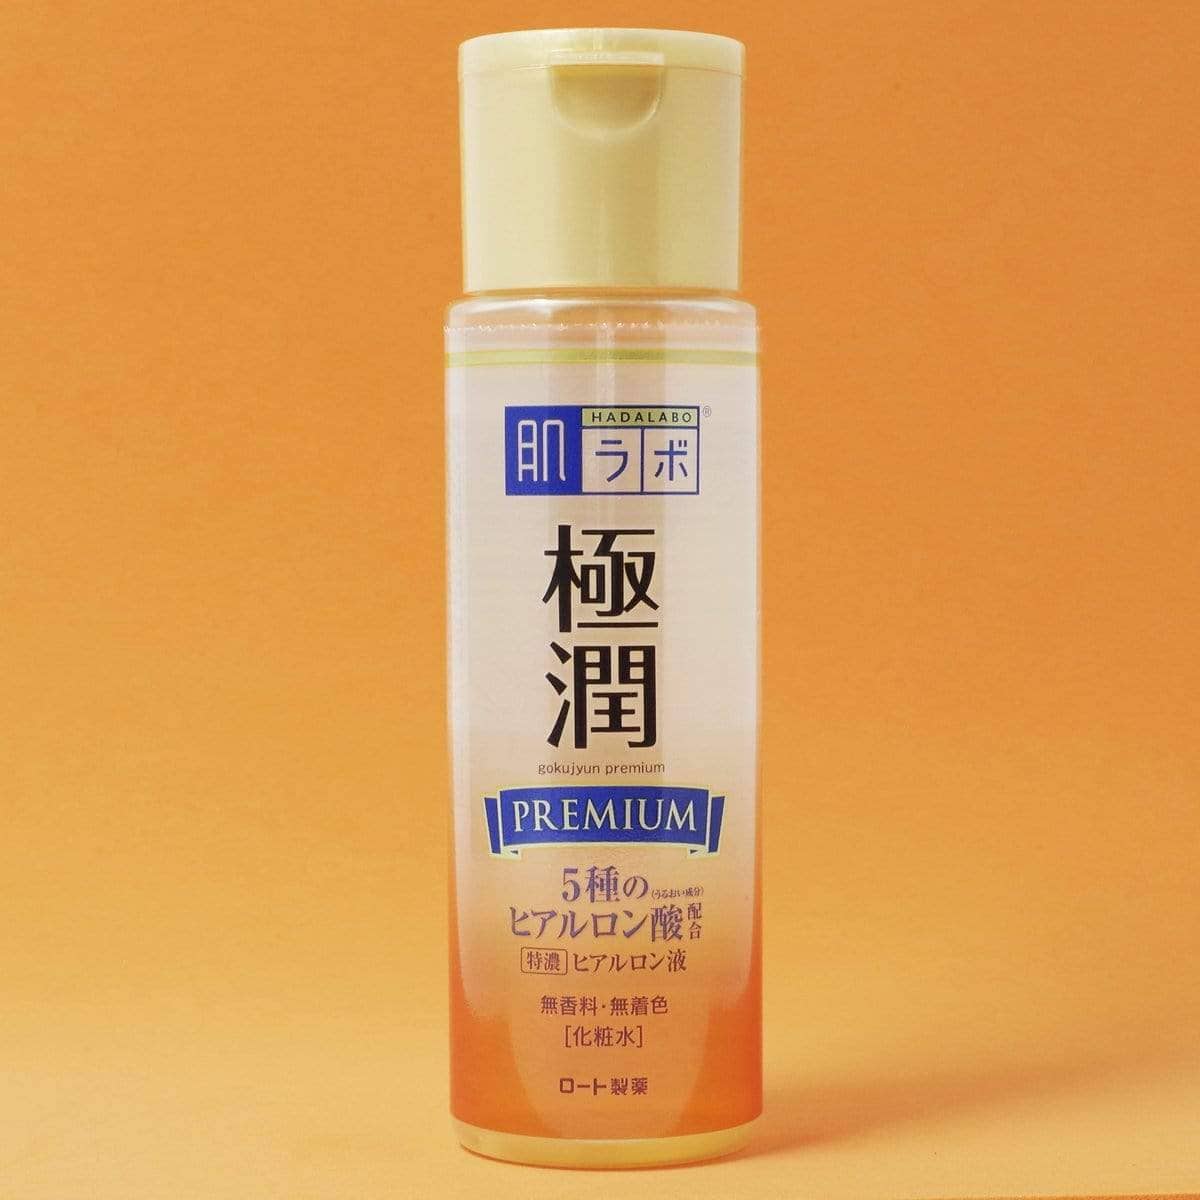 Một trong những sản phẩm trị sợi bã nhờn của Nhật có dạng lotion dễ thẩm thấu vào da